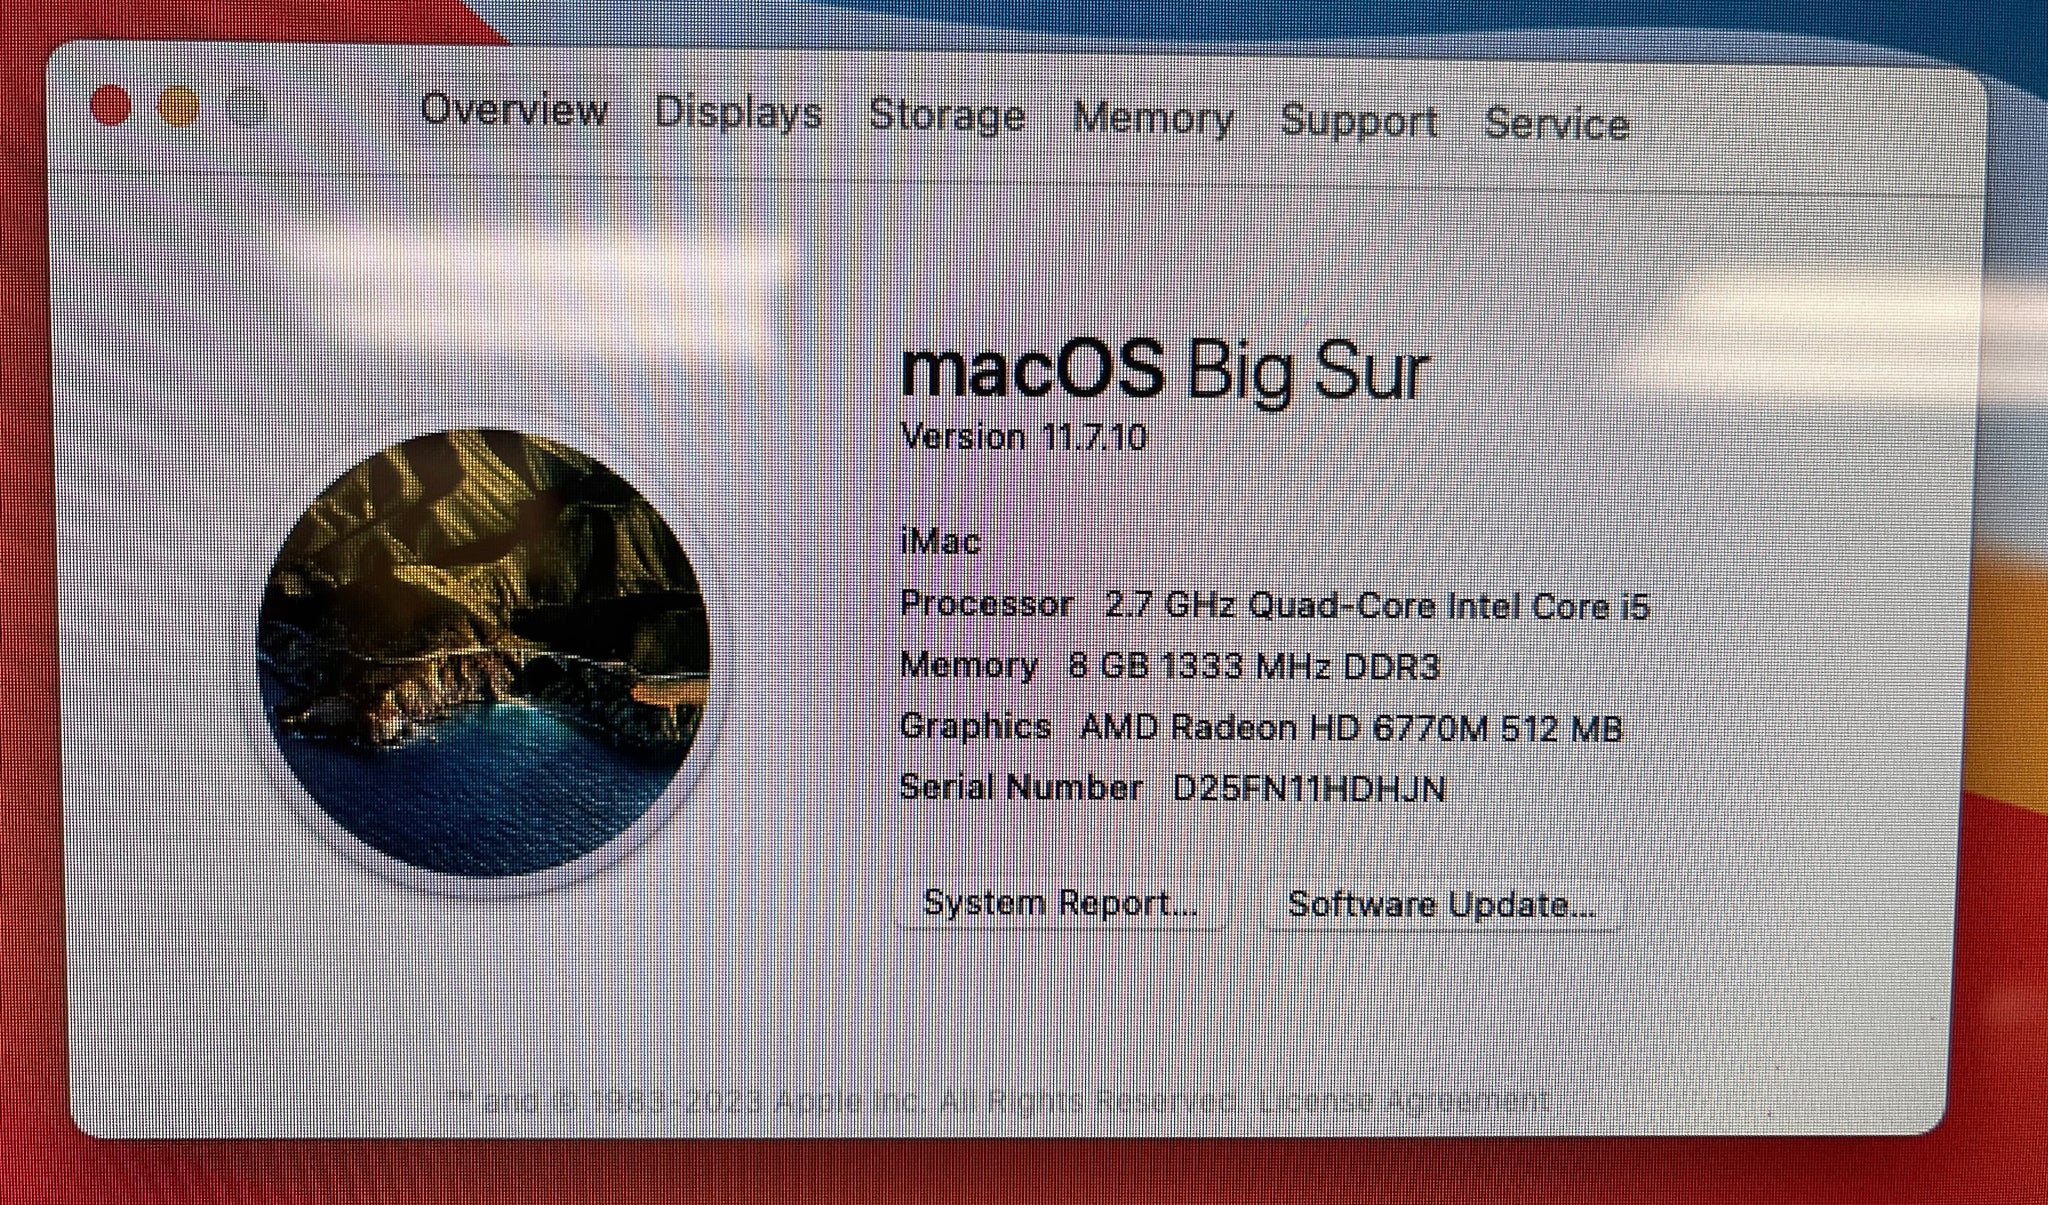 Apple iMac 21.5-inch May 2011 2.7GHz Intel Core i5 (MC812LL/A) – UNICOM,  Inc.